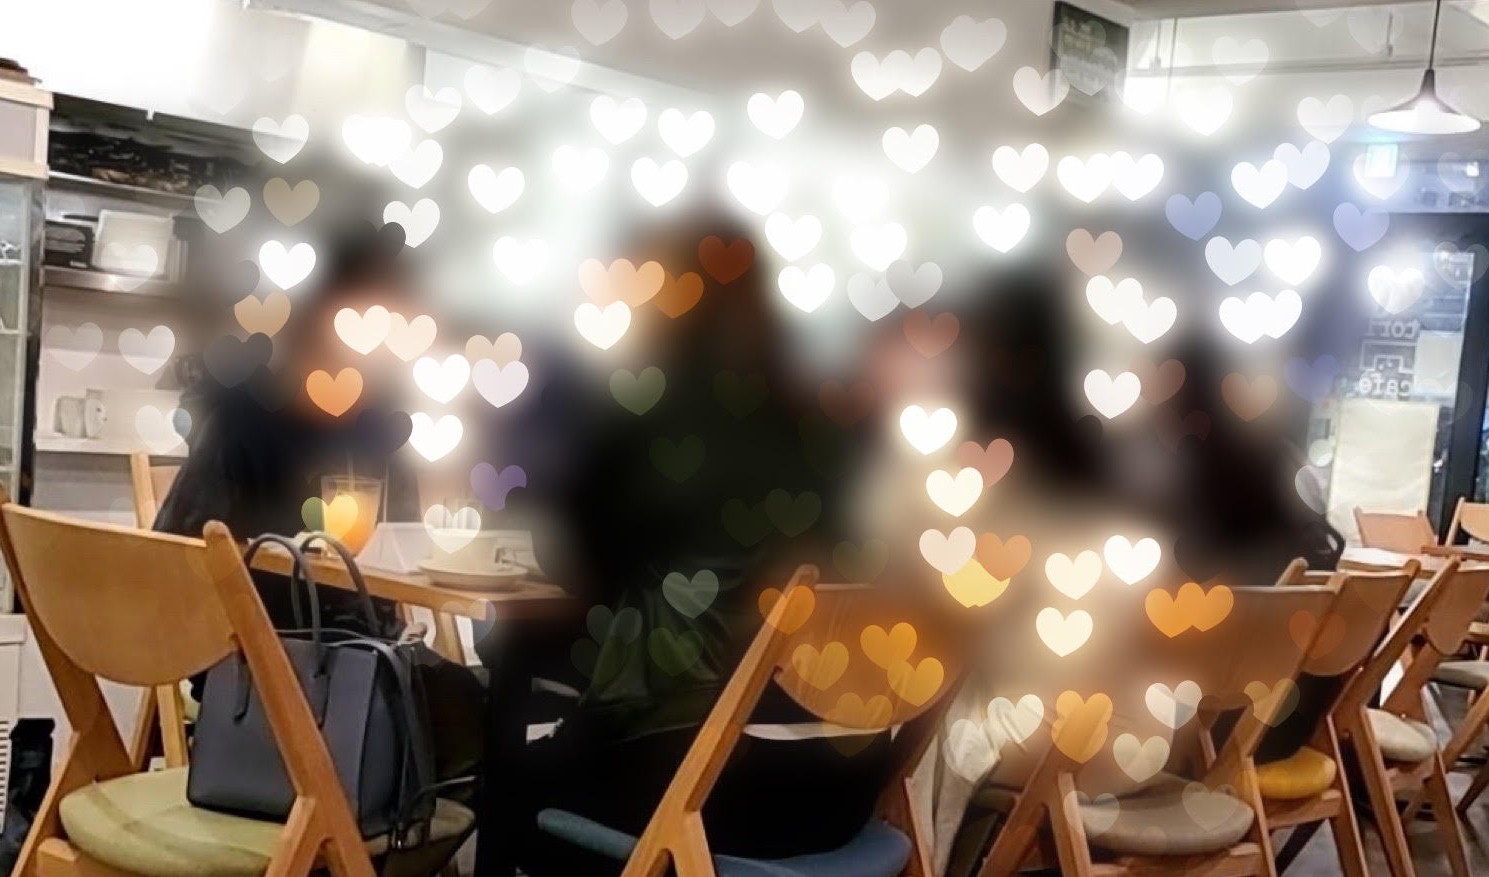 草津市の草津で開催する婚活パーティー・恋活イベントイメージ